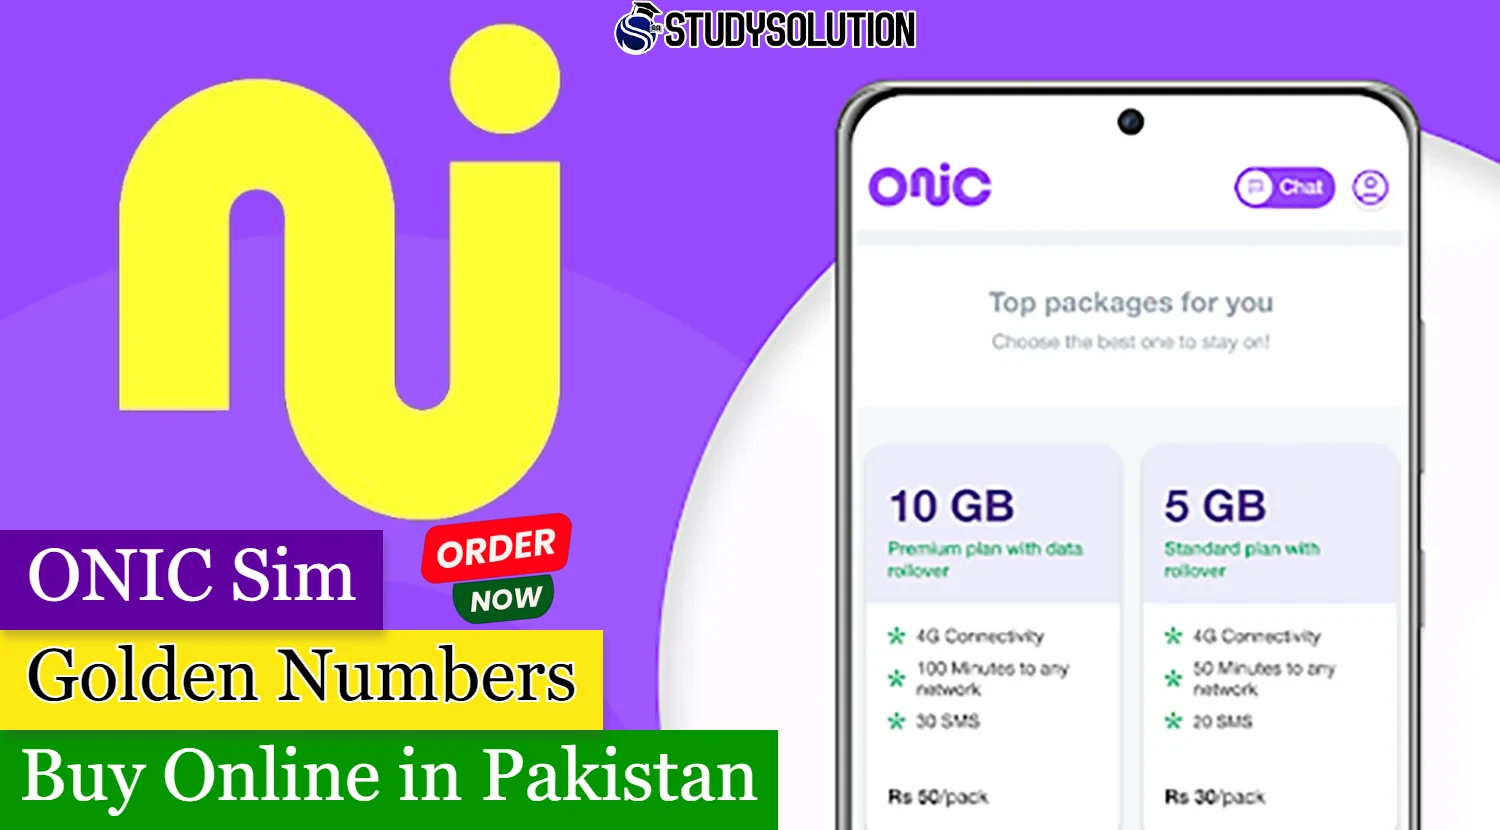 ONIC Sim Golden Numbers Buy Online in Pakistan